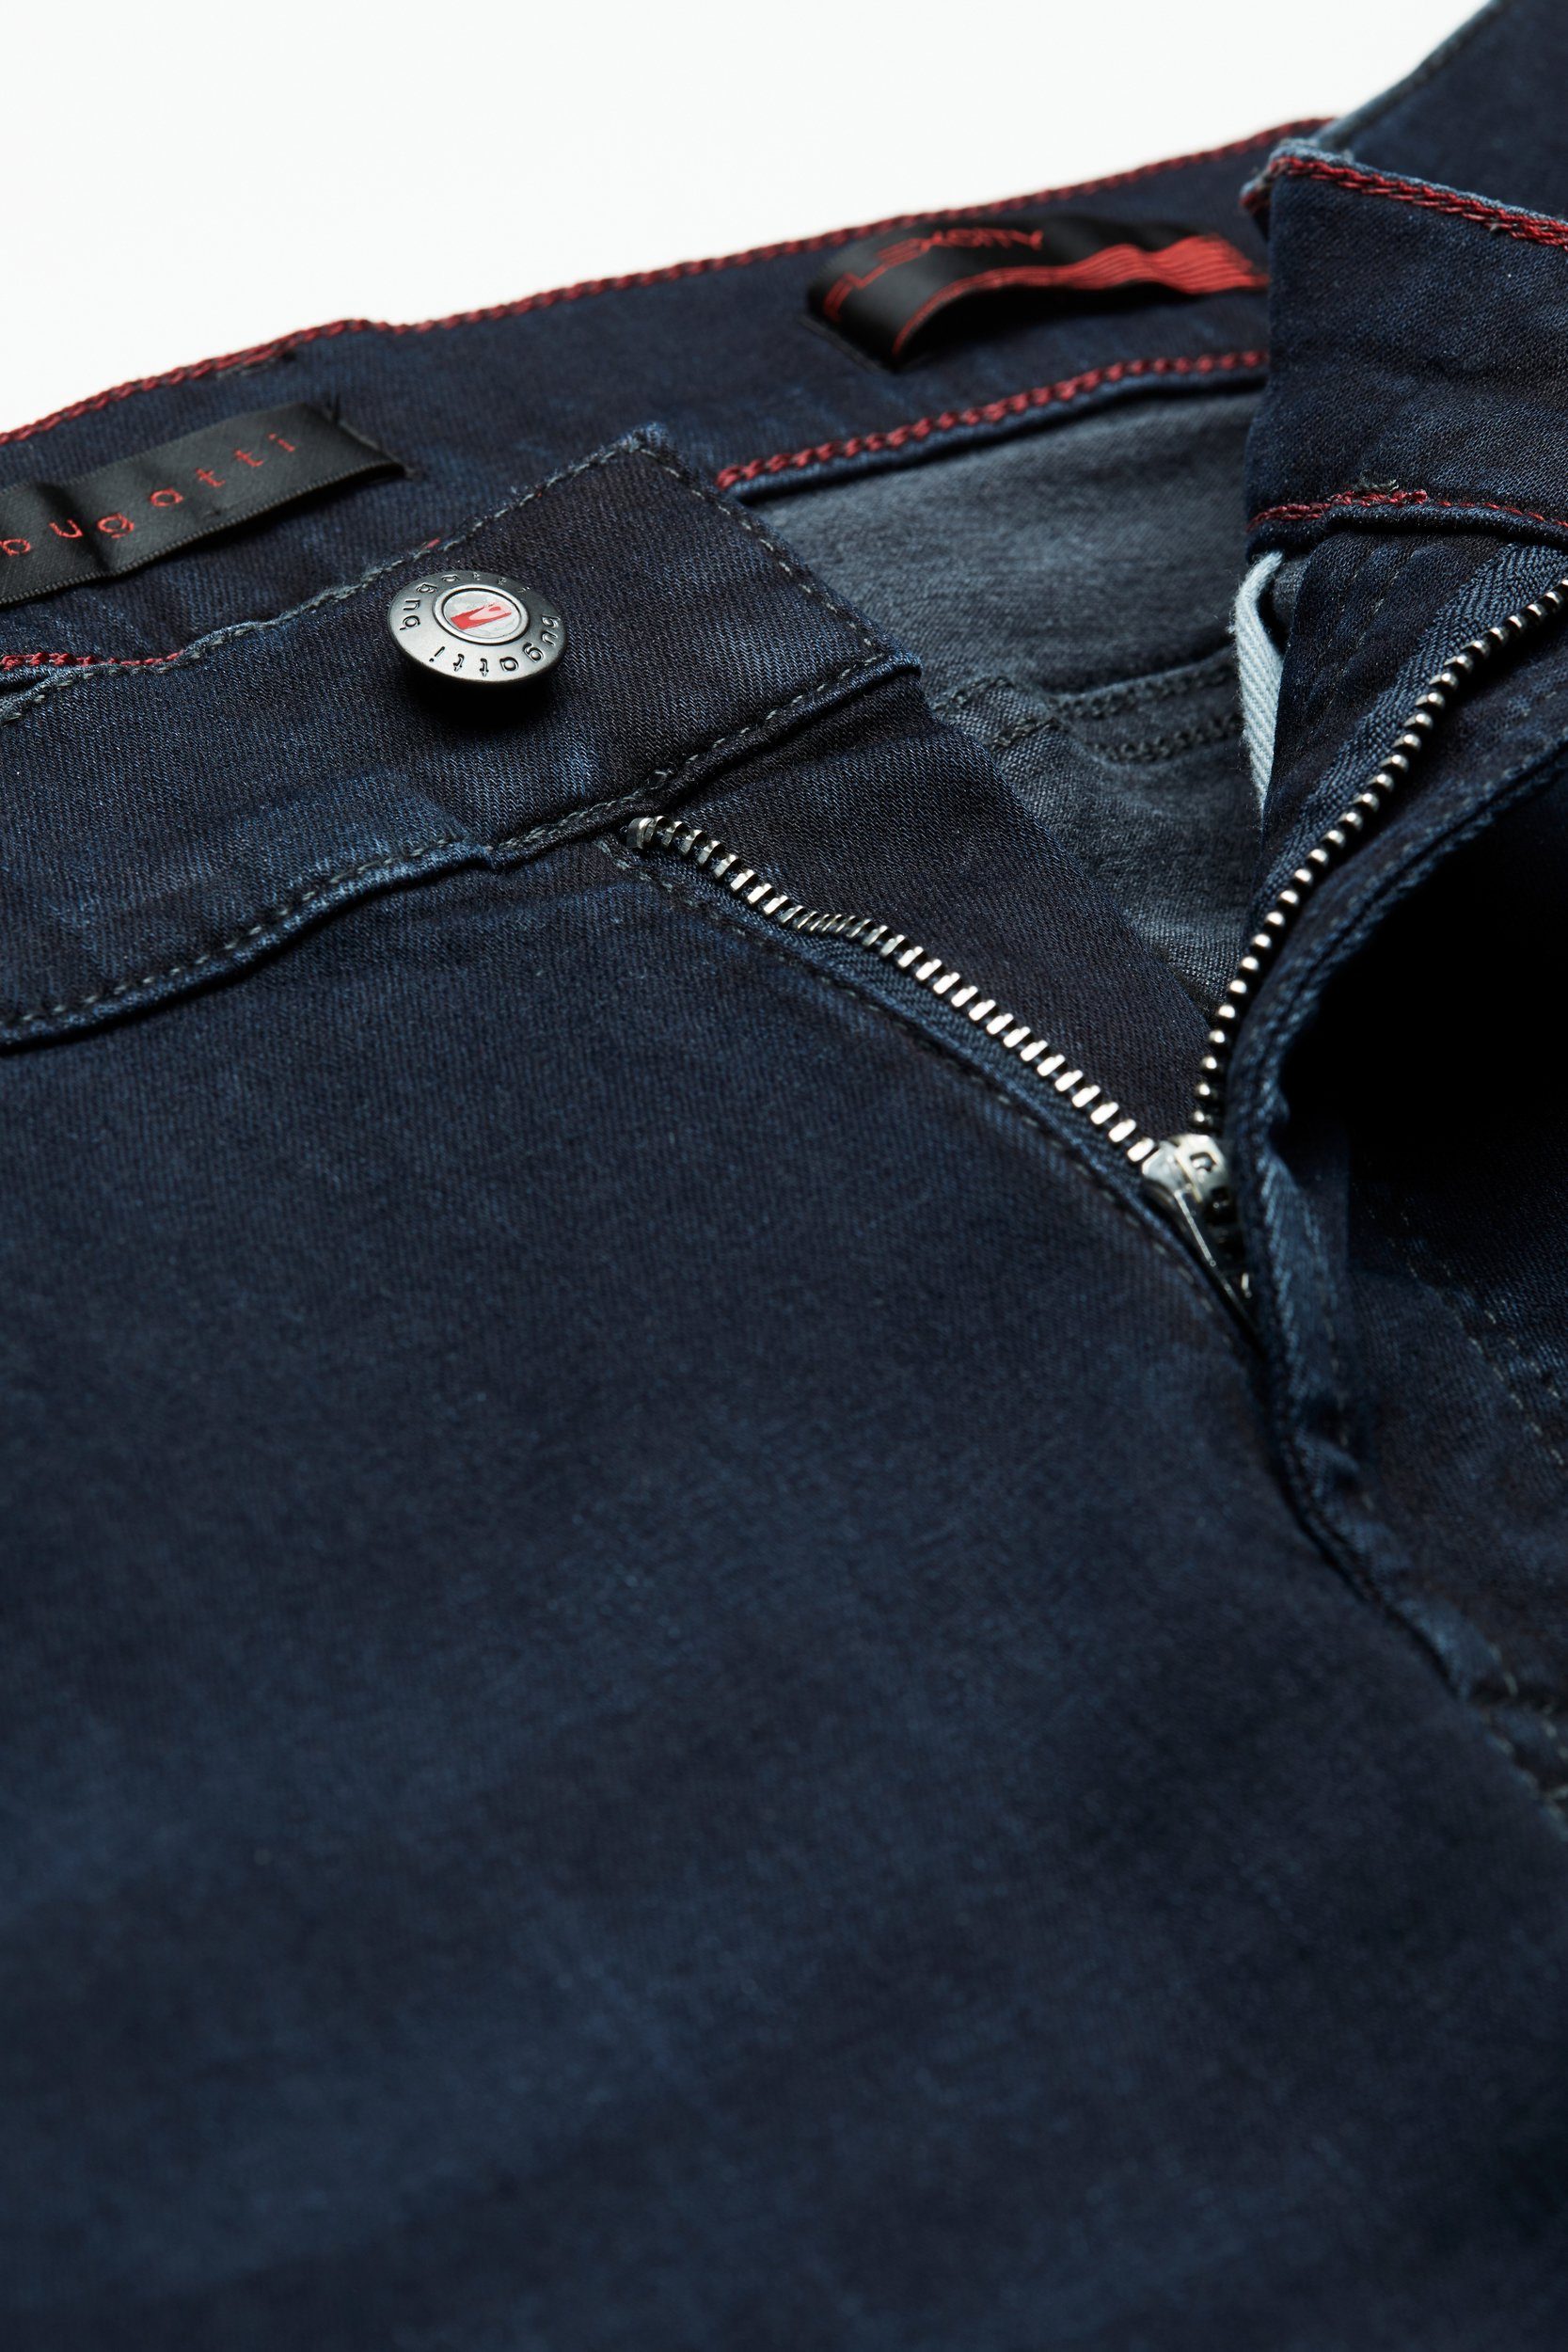 Denim Flexcity mit bugatti hohem dunkelblau 5-Pocket-Jeans Tragekomfort